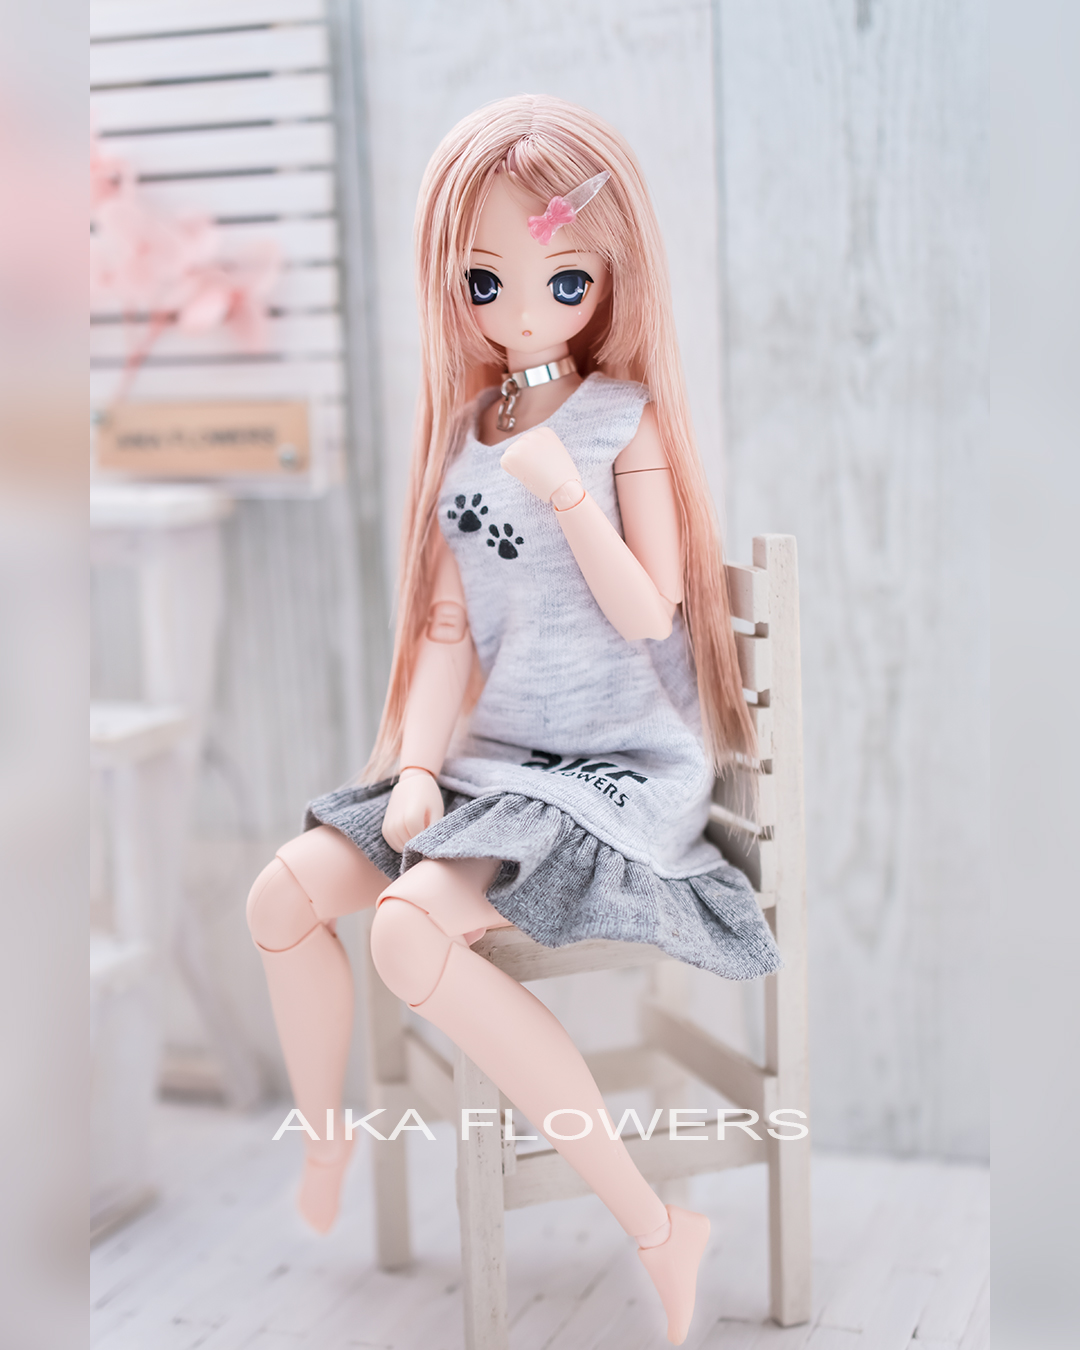 シルクスクリーン印刷したワンピース Aika Flowers